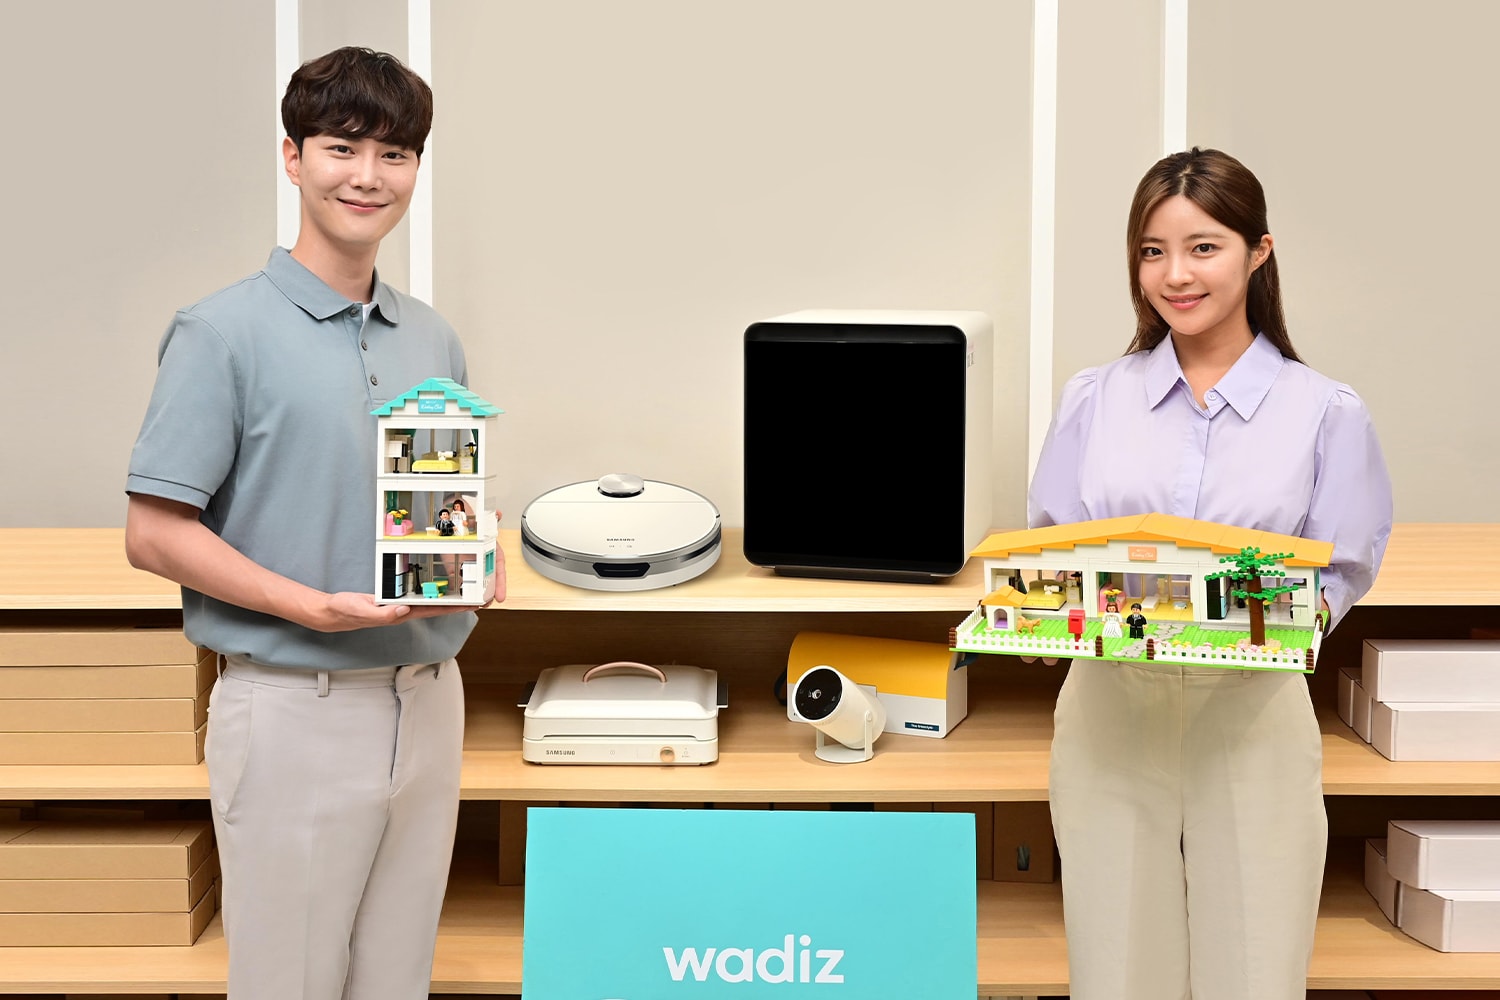 와디즈, 삼성전자와 옥스포드가 함께한 '신혼 가전 굿즈' 한정판 출시 samsung home appliances oxford toy limited edition goods release wadiz